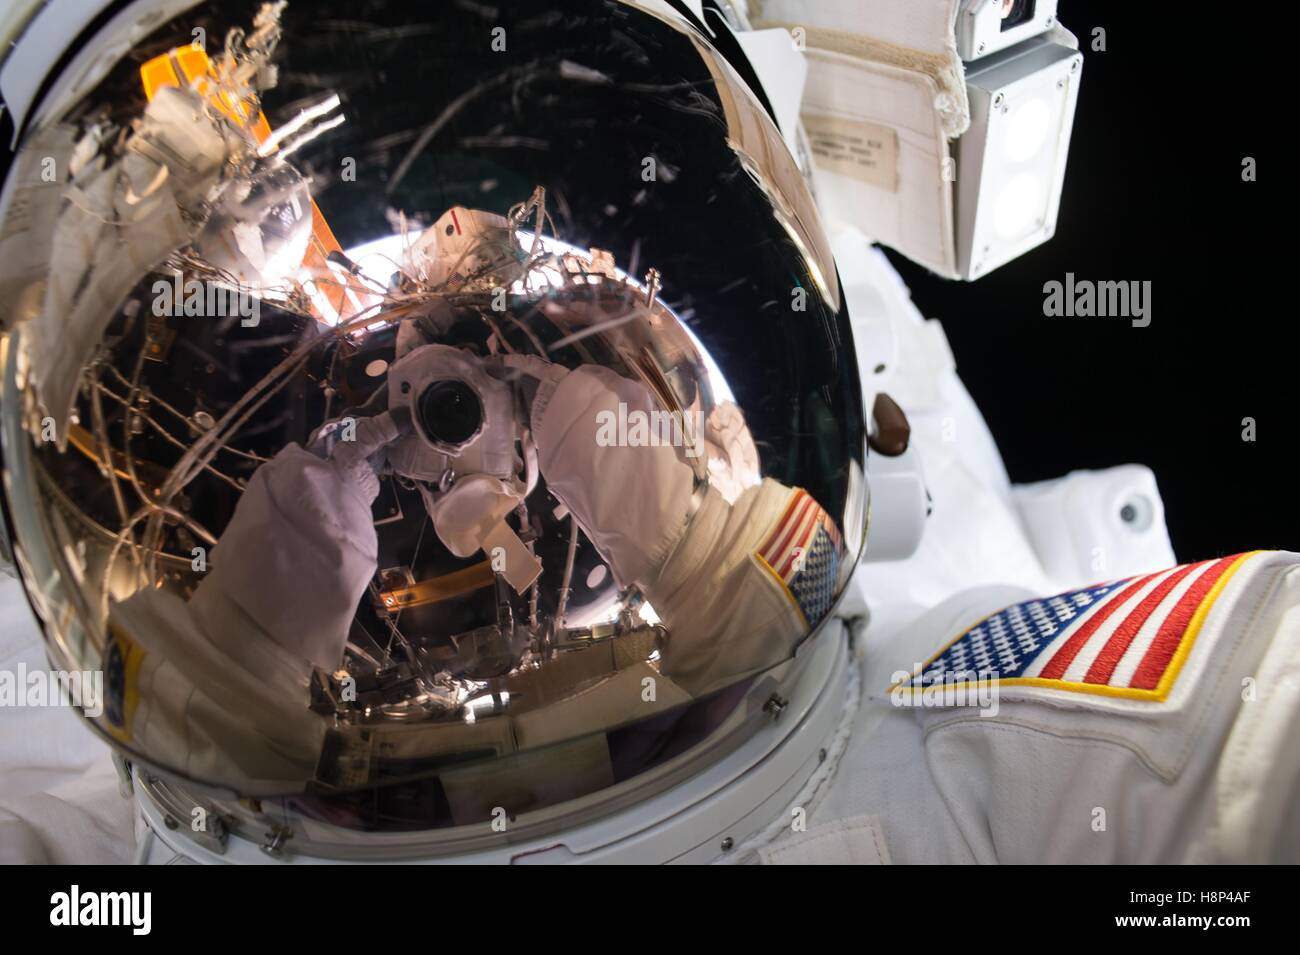 Internationale Raumstation NASA Astronaut Kate Rubins nimmt ein Selbstporträt in ihrem Raumanzug während einer EVA Weltraumspaziergang, den internationalen Docking Adapter 19. August 2016 in der Erdumlaufbahn zu installieren. Die IDAs werden für die zukünftigen Ankünfte von Boeing und SpaceX kommerzielle Mannschaft Raumfahrzeugen verwendet werden. Stockfoto